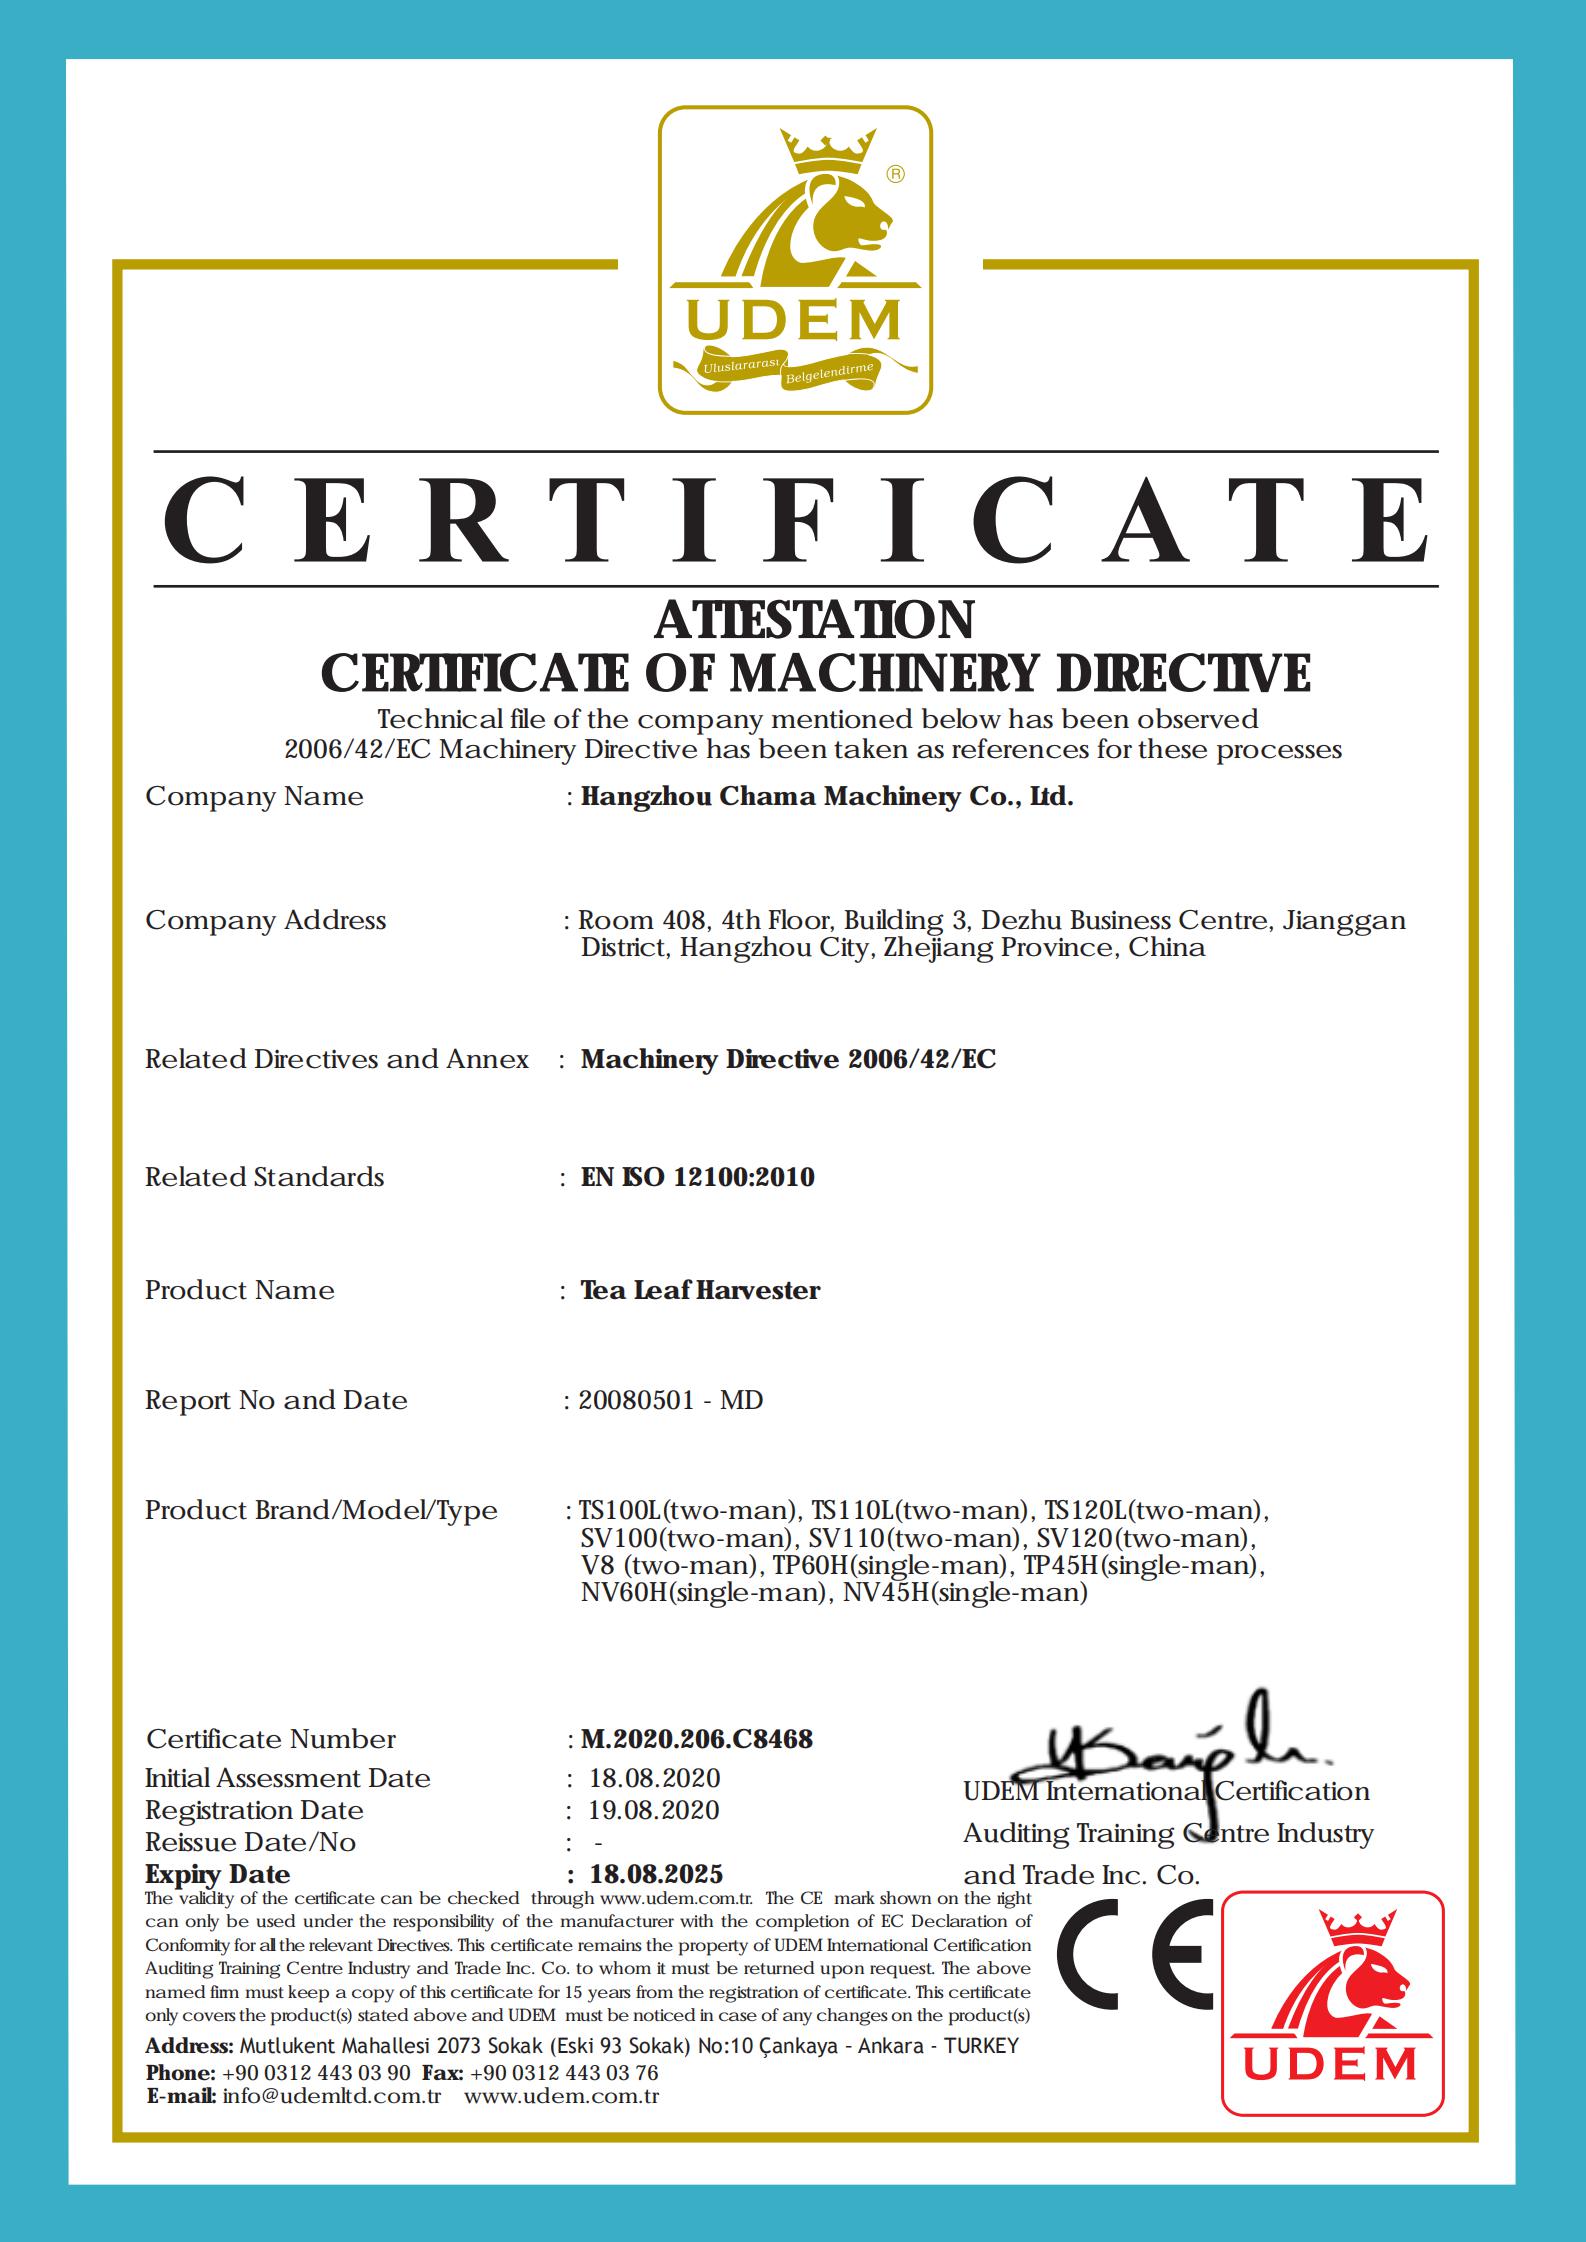 Kõik teekombainid ja teelõikusmasinad läbisid CE-sertifikaadi